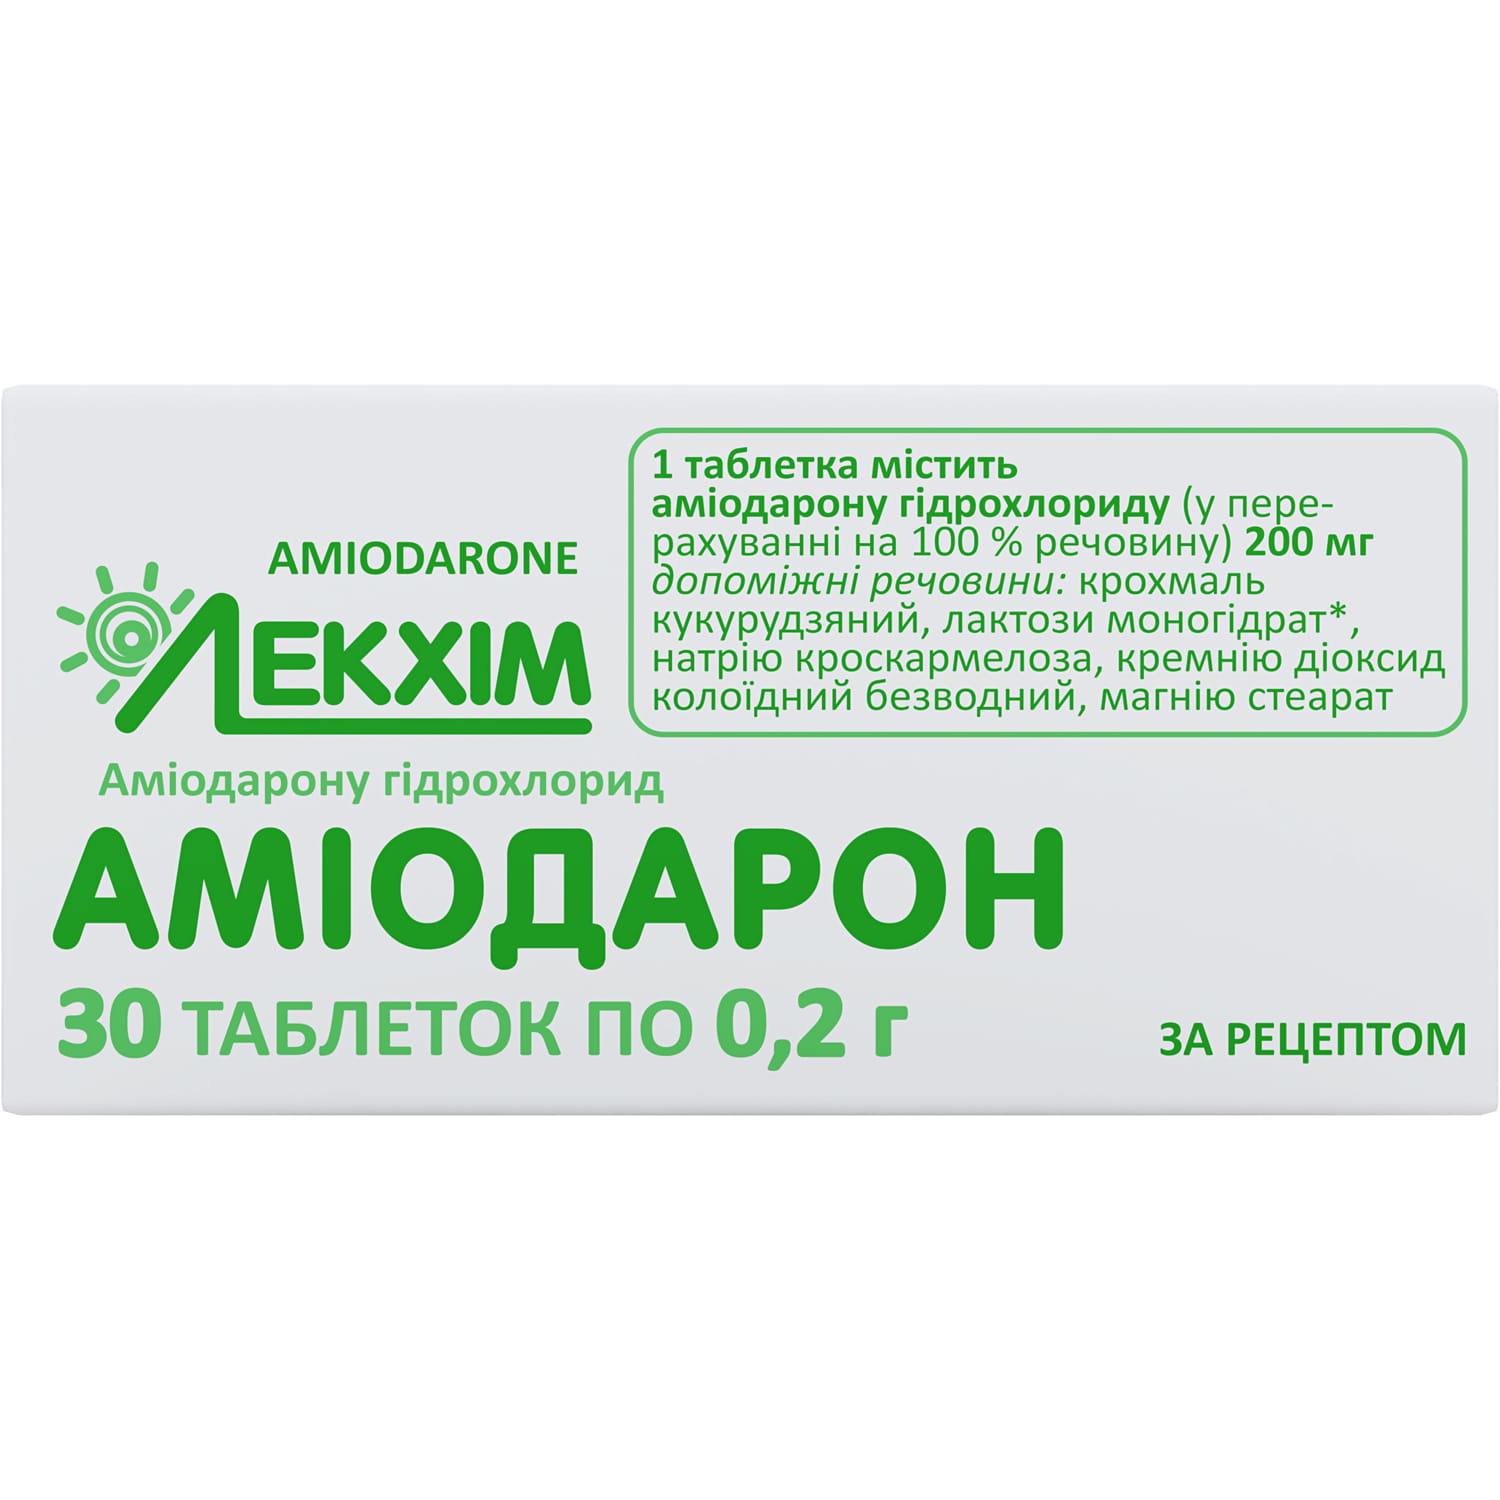 ORLISTAT POLPHARMA Polpharma 60 mg твердые капсулы, 42 шт.